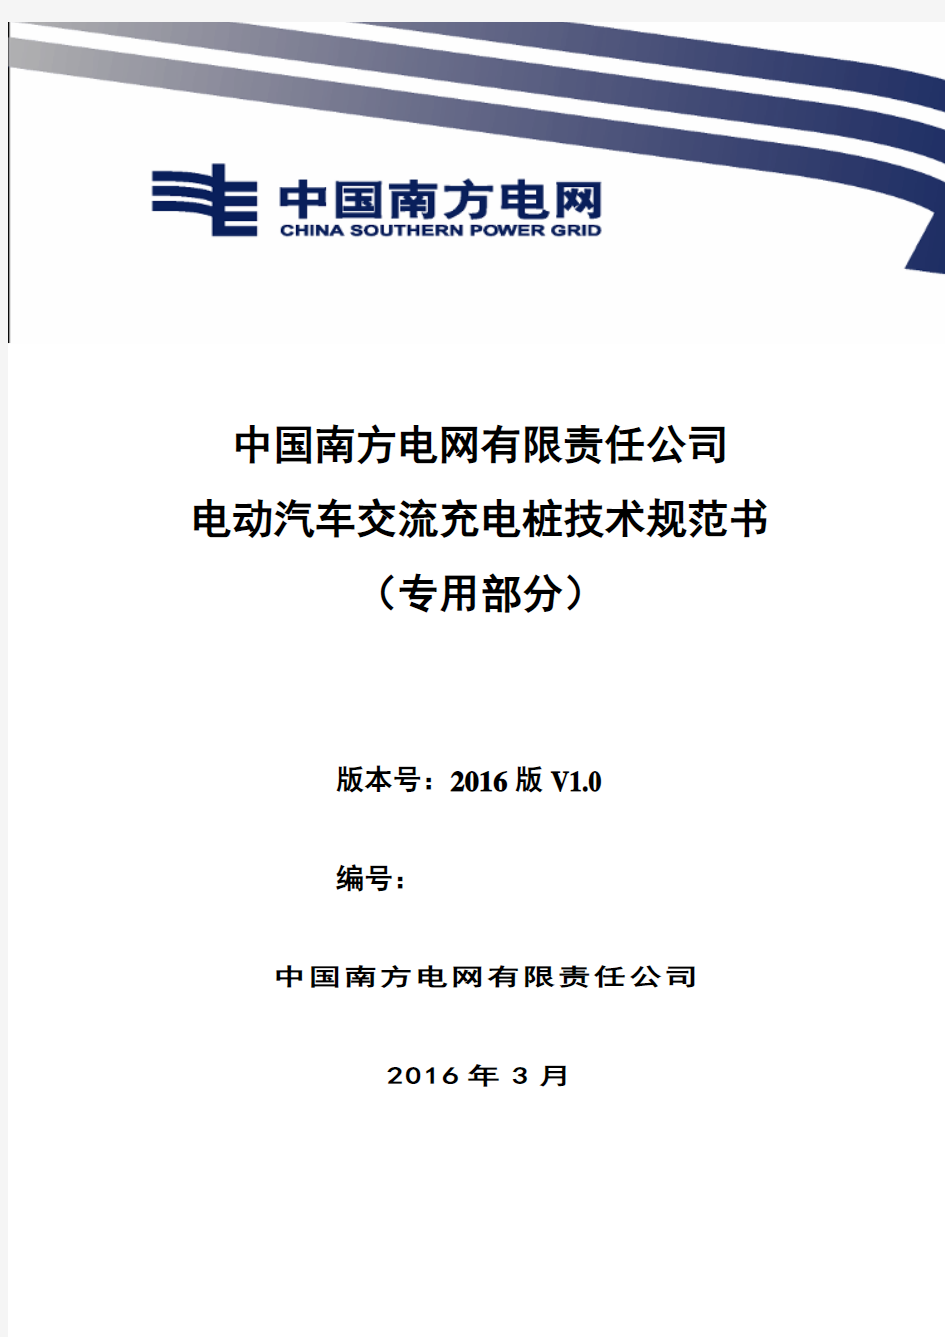 中国南方电网有限责任公司电动汽车交流充电桩技术规范书(专用部分)